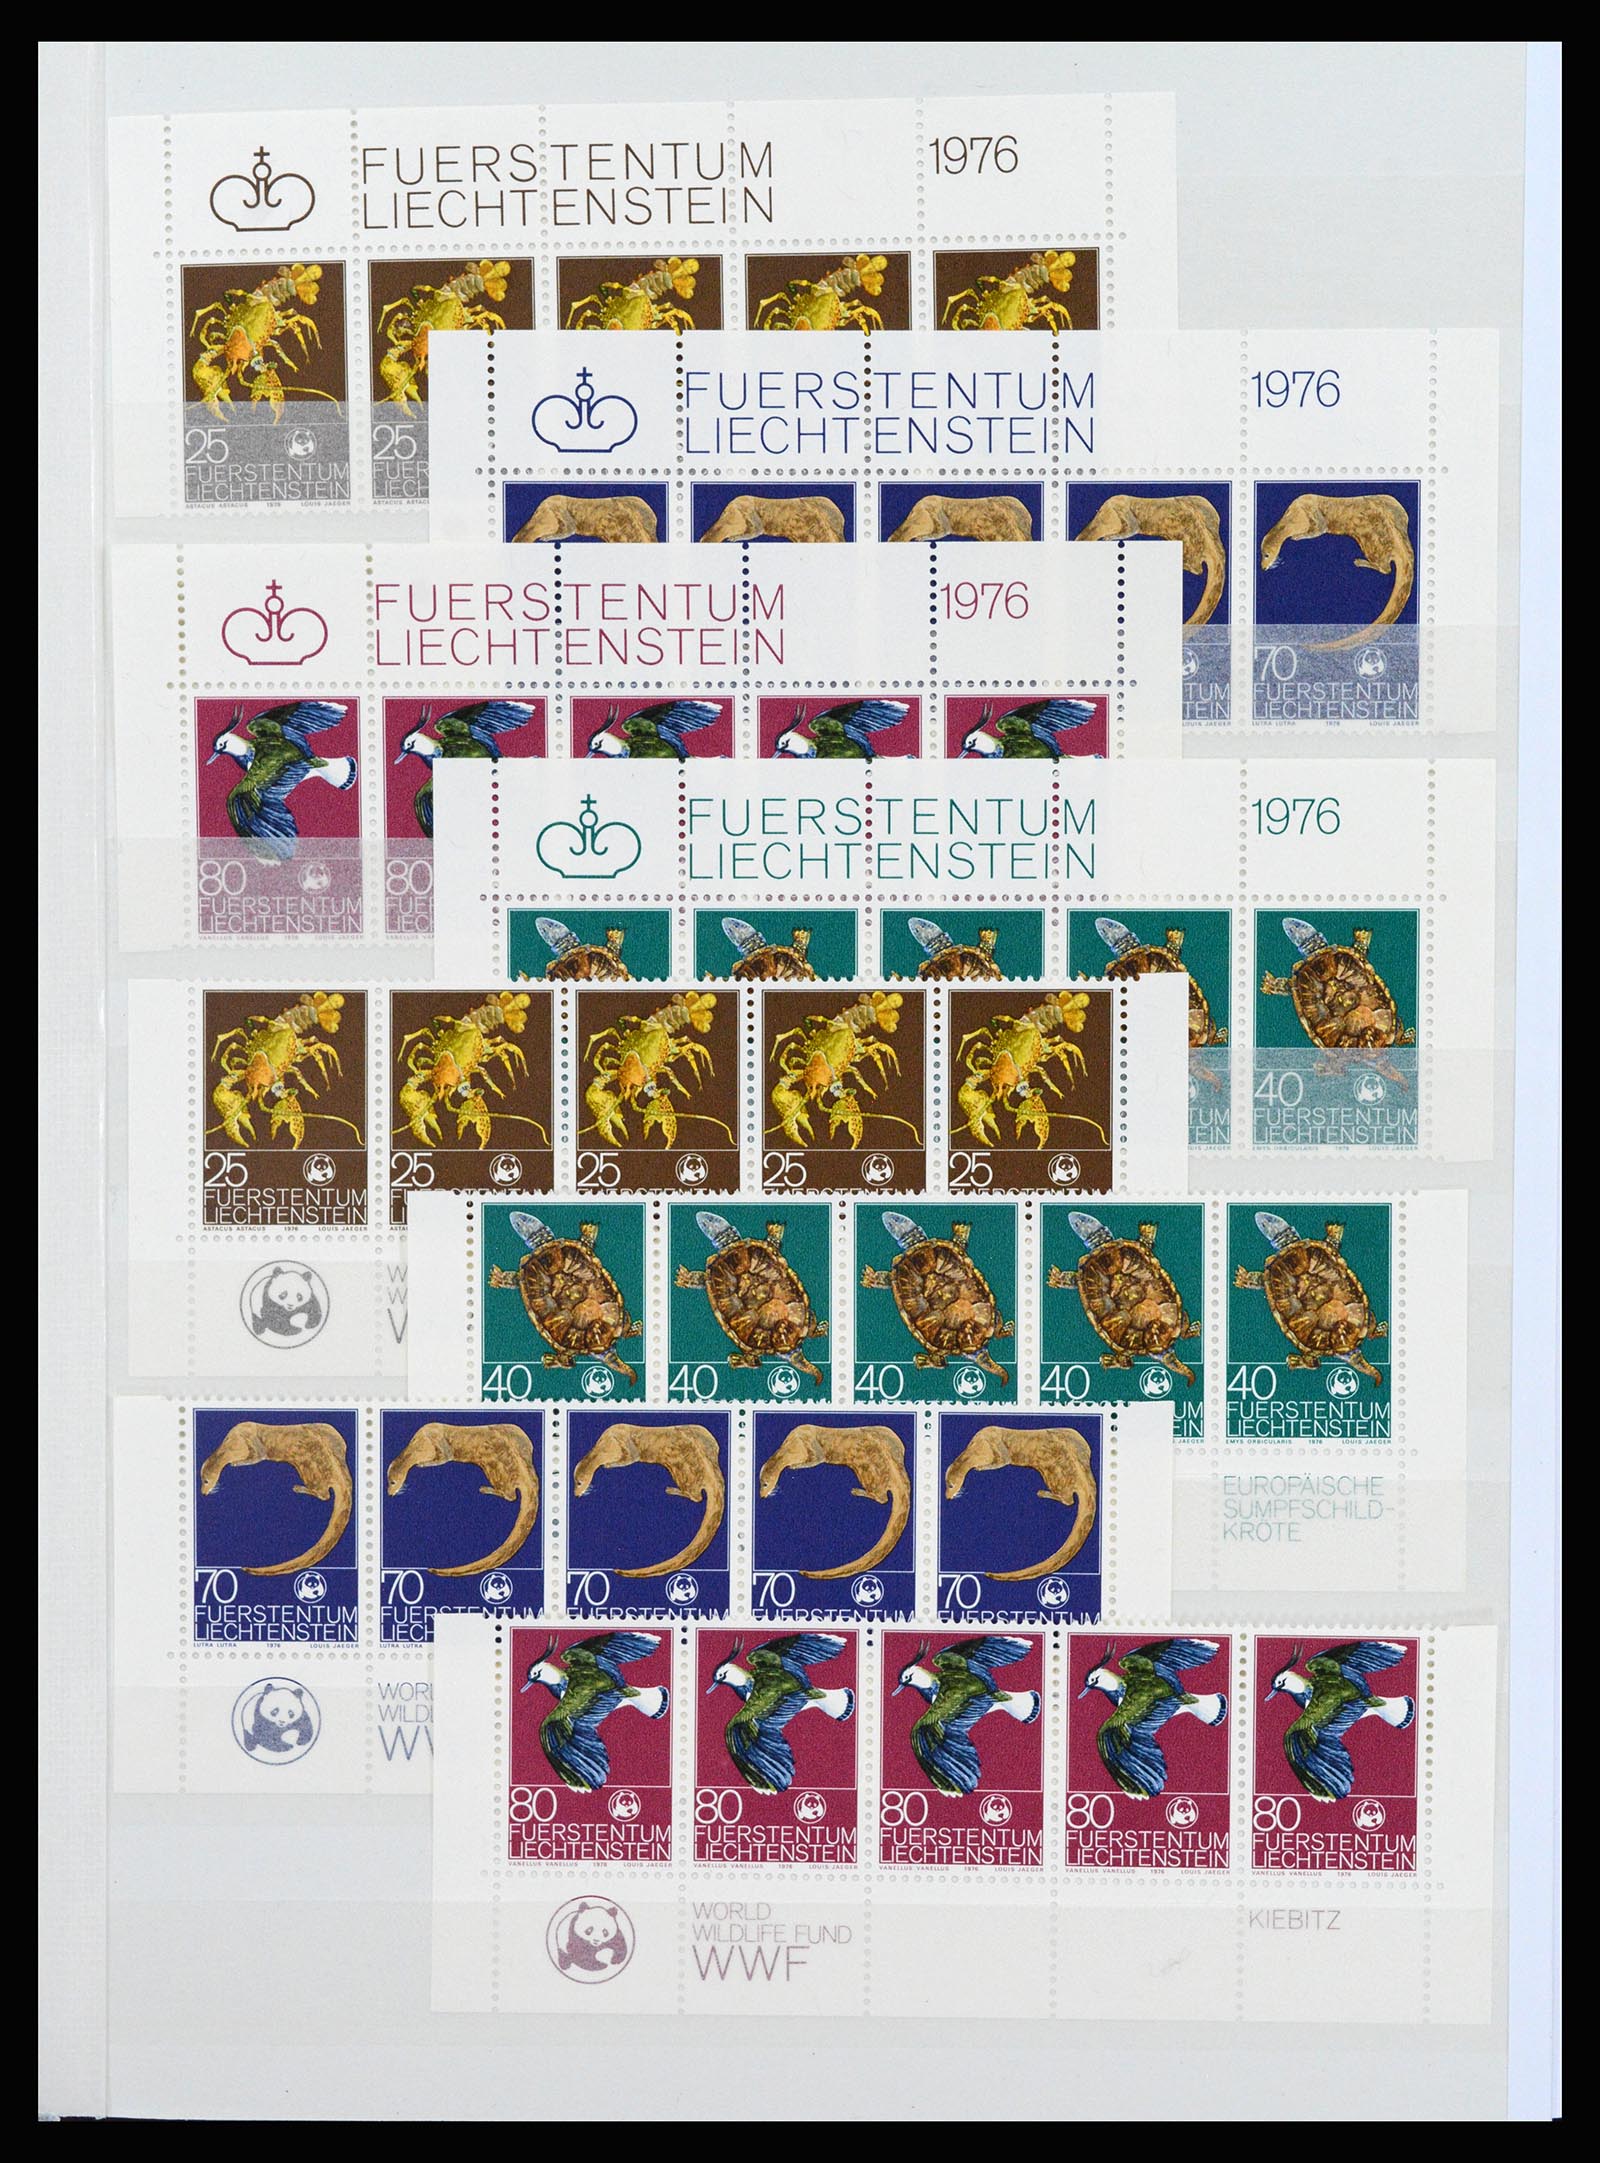 37261 041 - Stamp collection 37261 Liechtenstein 1961-1995.